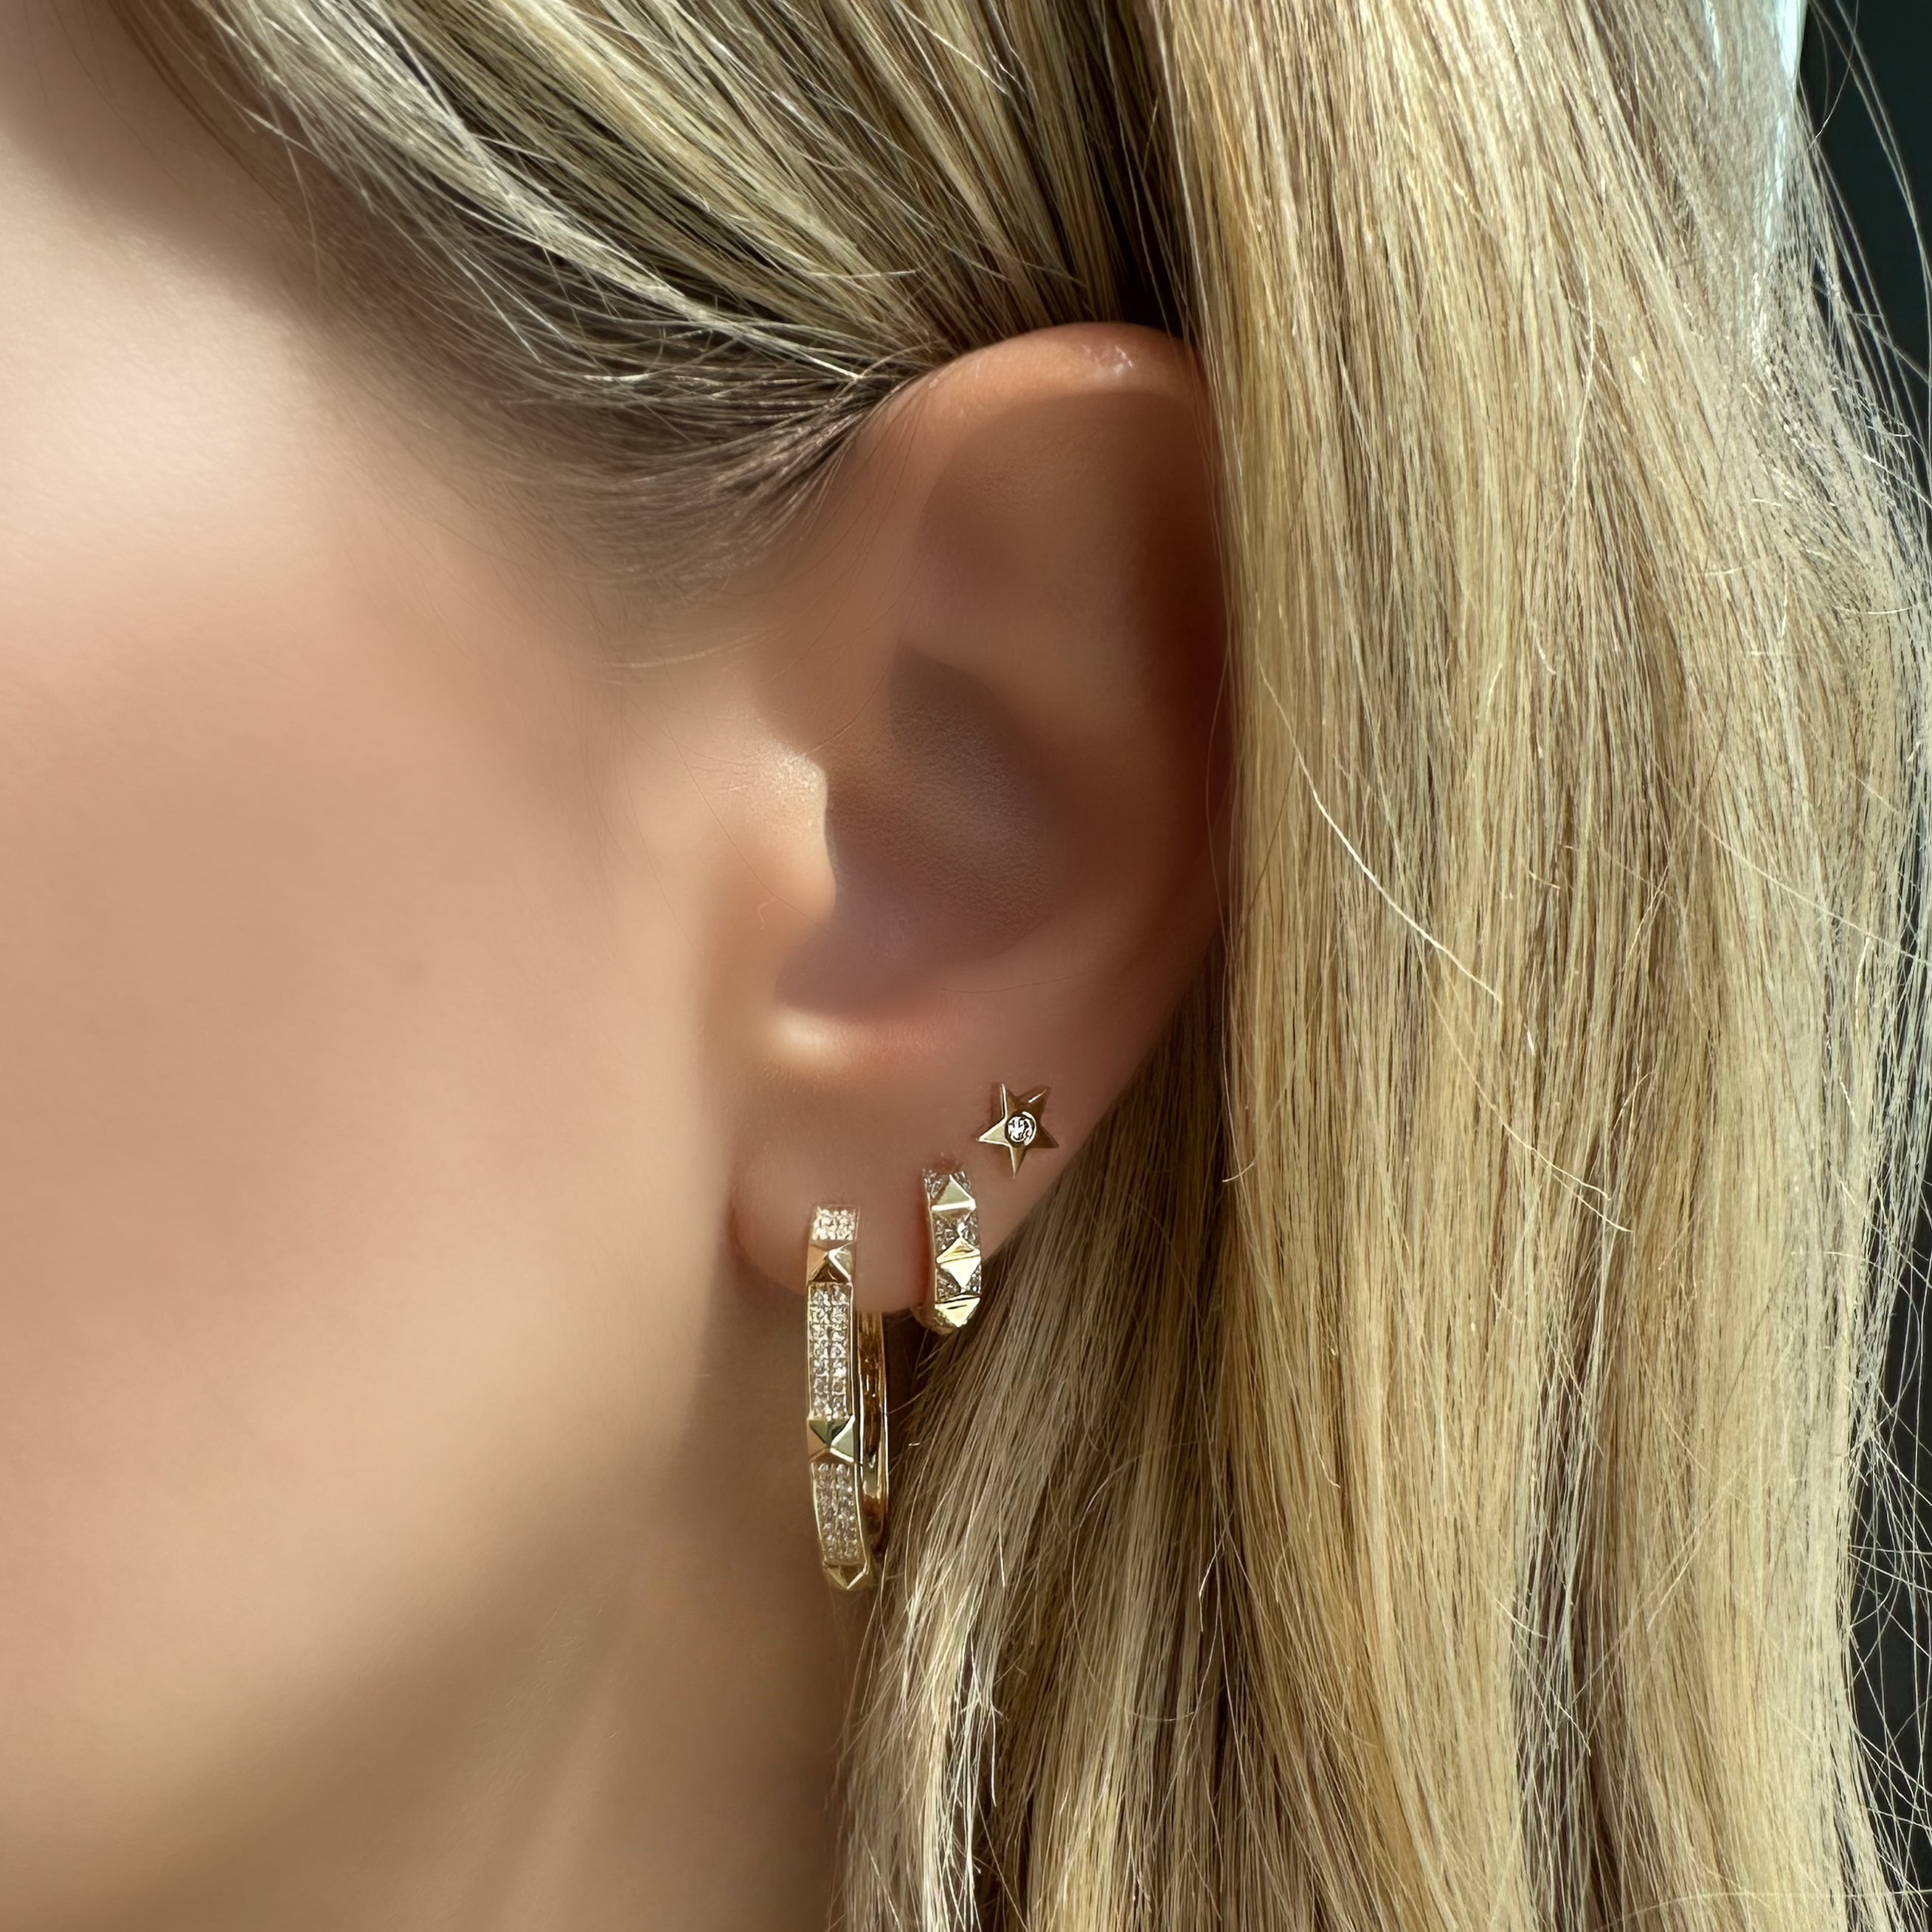 14K Gold Diamond Accented Star Button Earrings - Earrings - Izakov Diamonds + Fine Jewelry